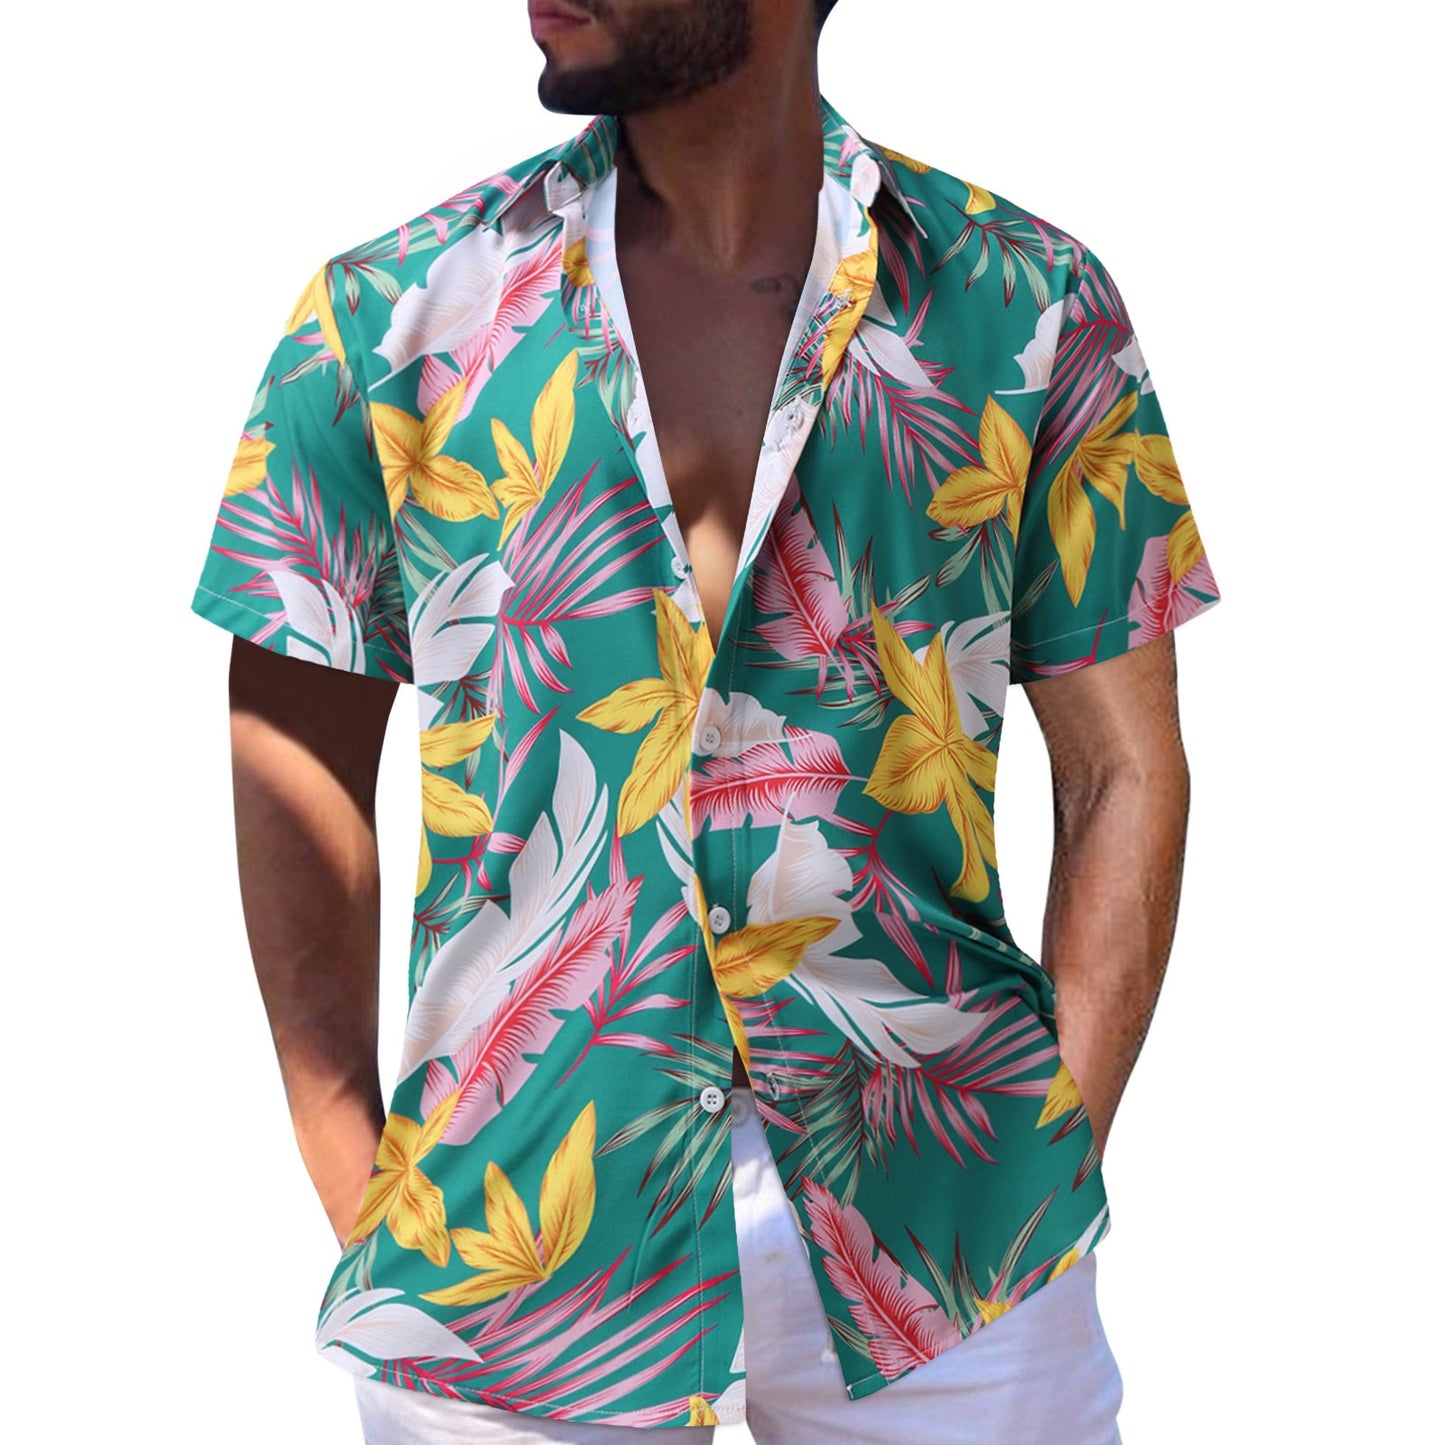 Tropic Summer Shirt